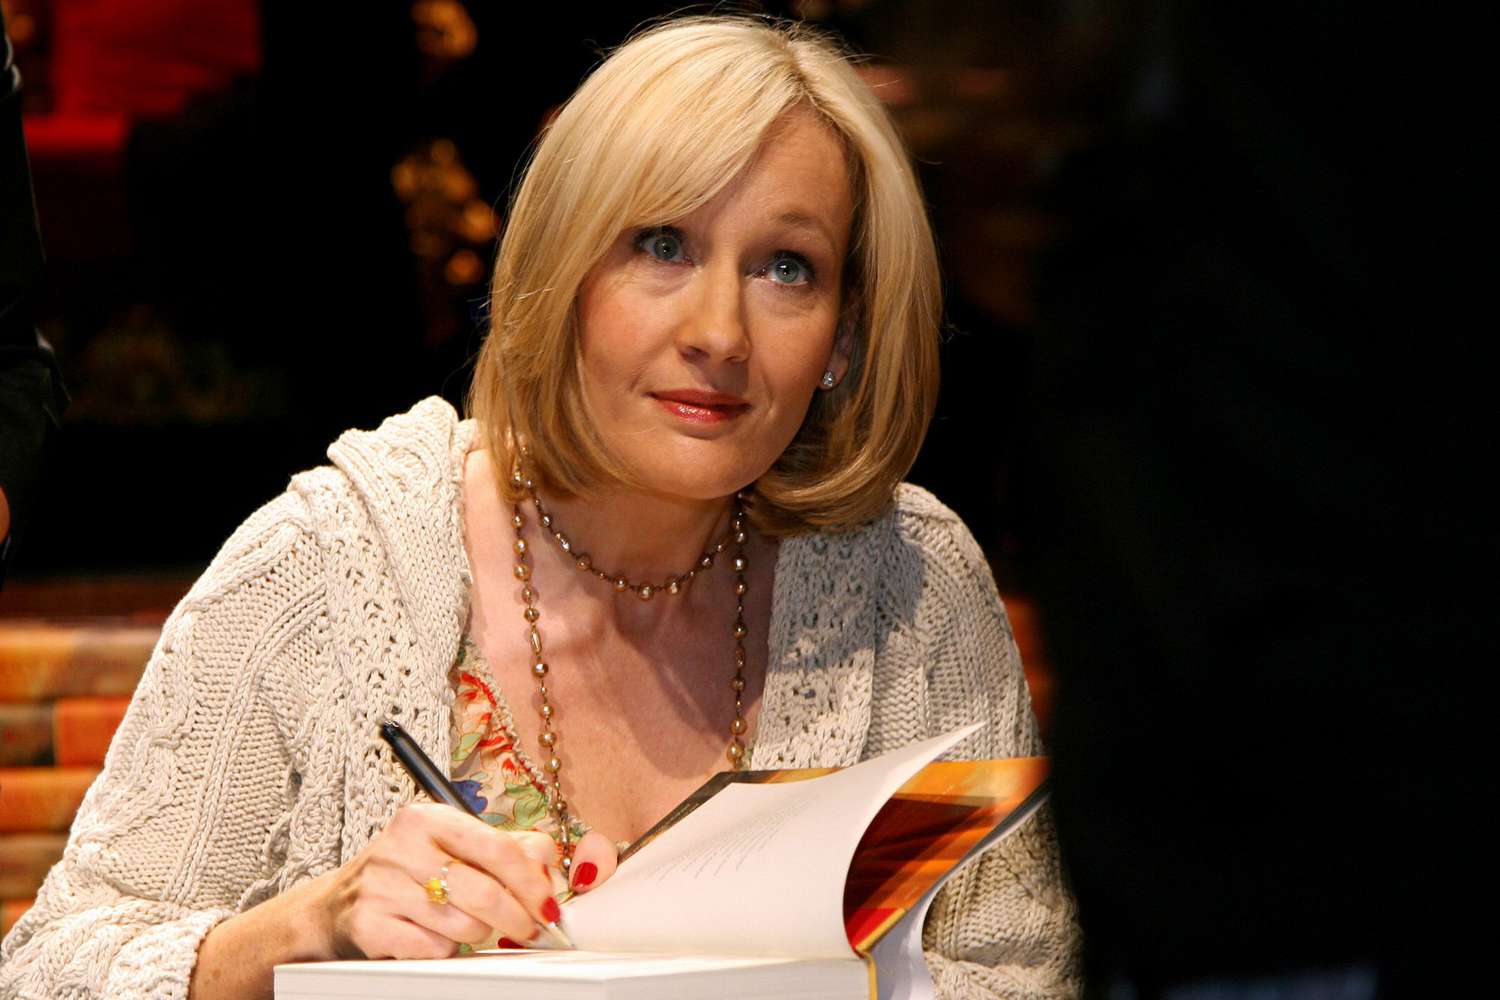 British writer J.K. Rowling signs copies